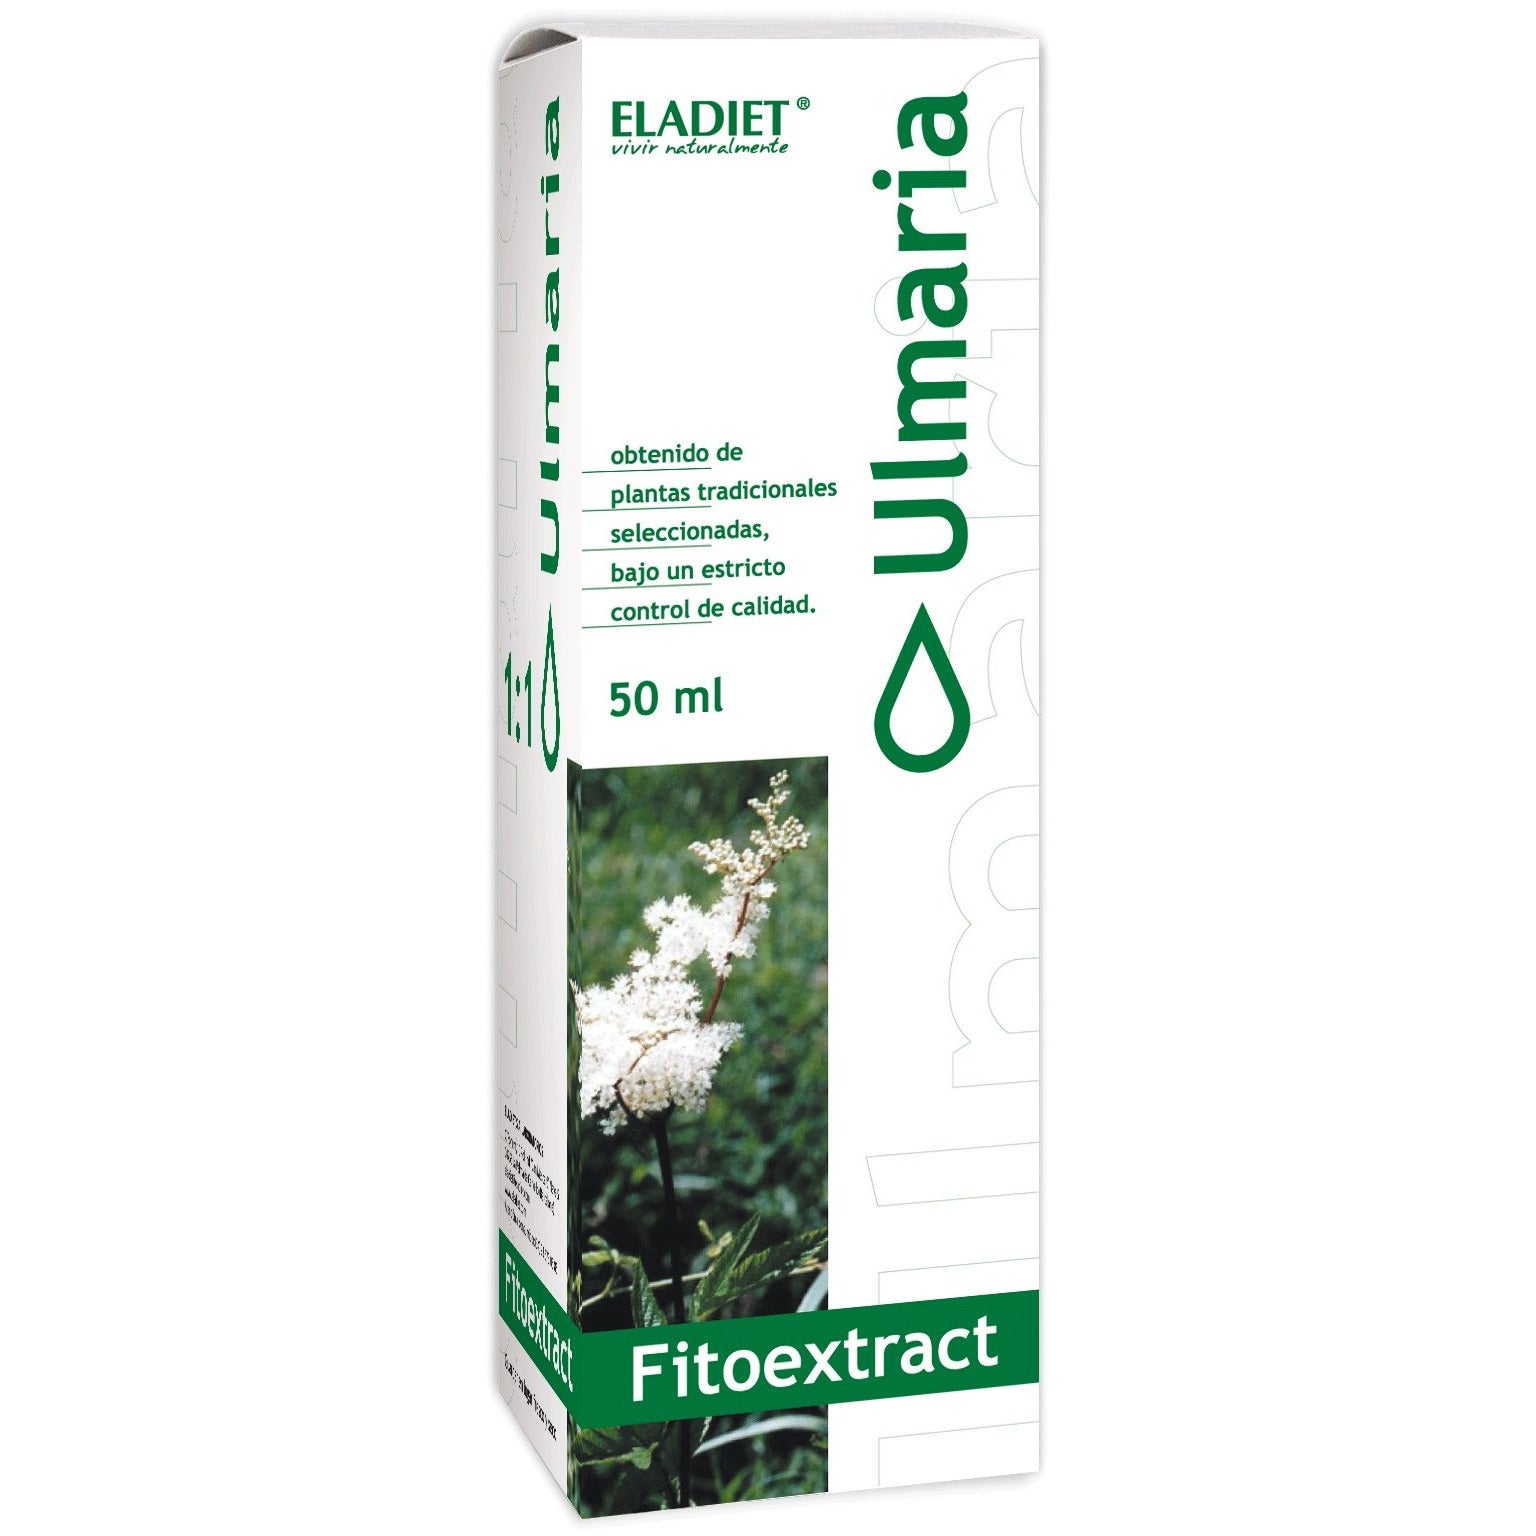 Eladiet - Fitoextrac Ulmaria 50Ml - Biopharmacia, Parafarmacia online